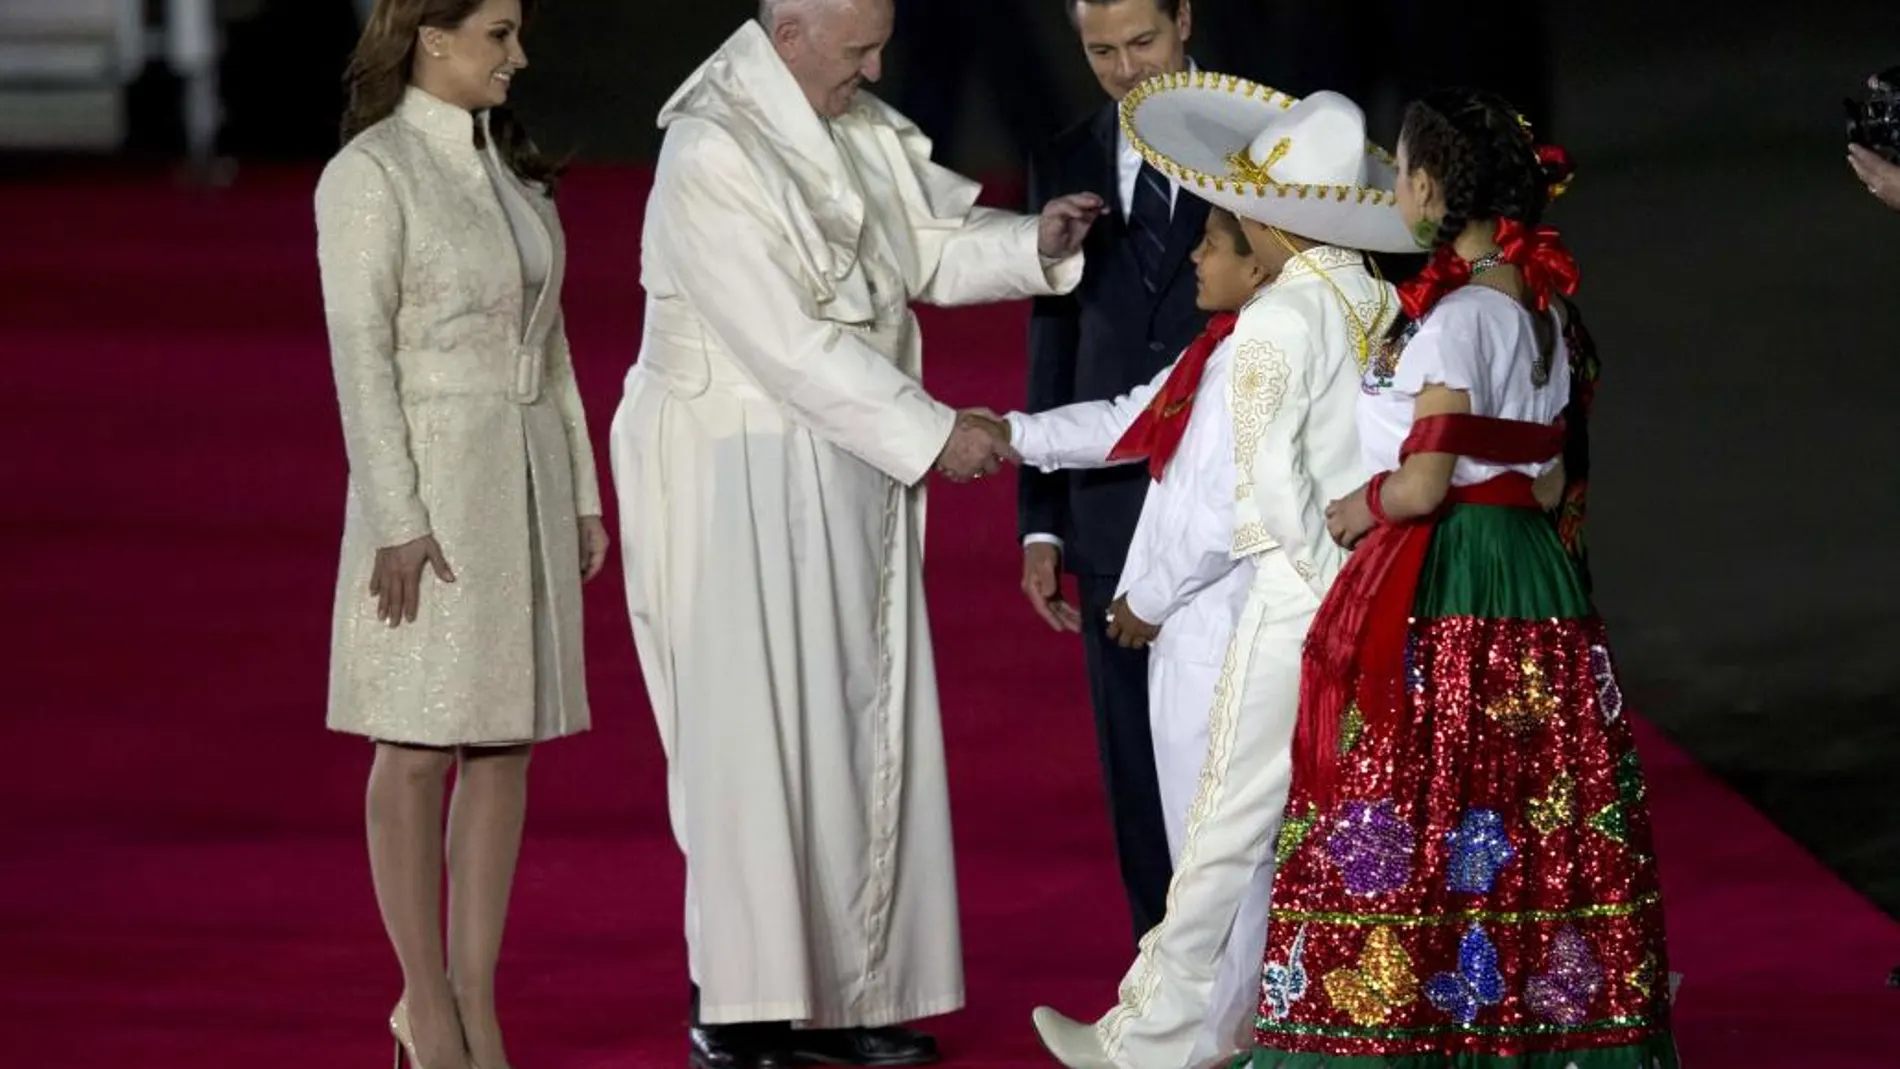 El Papa saluda a una familia de mexicanos vestidos con trajes tradicionales, junto al presidente de México y su esposa